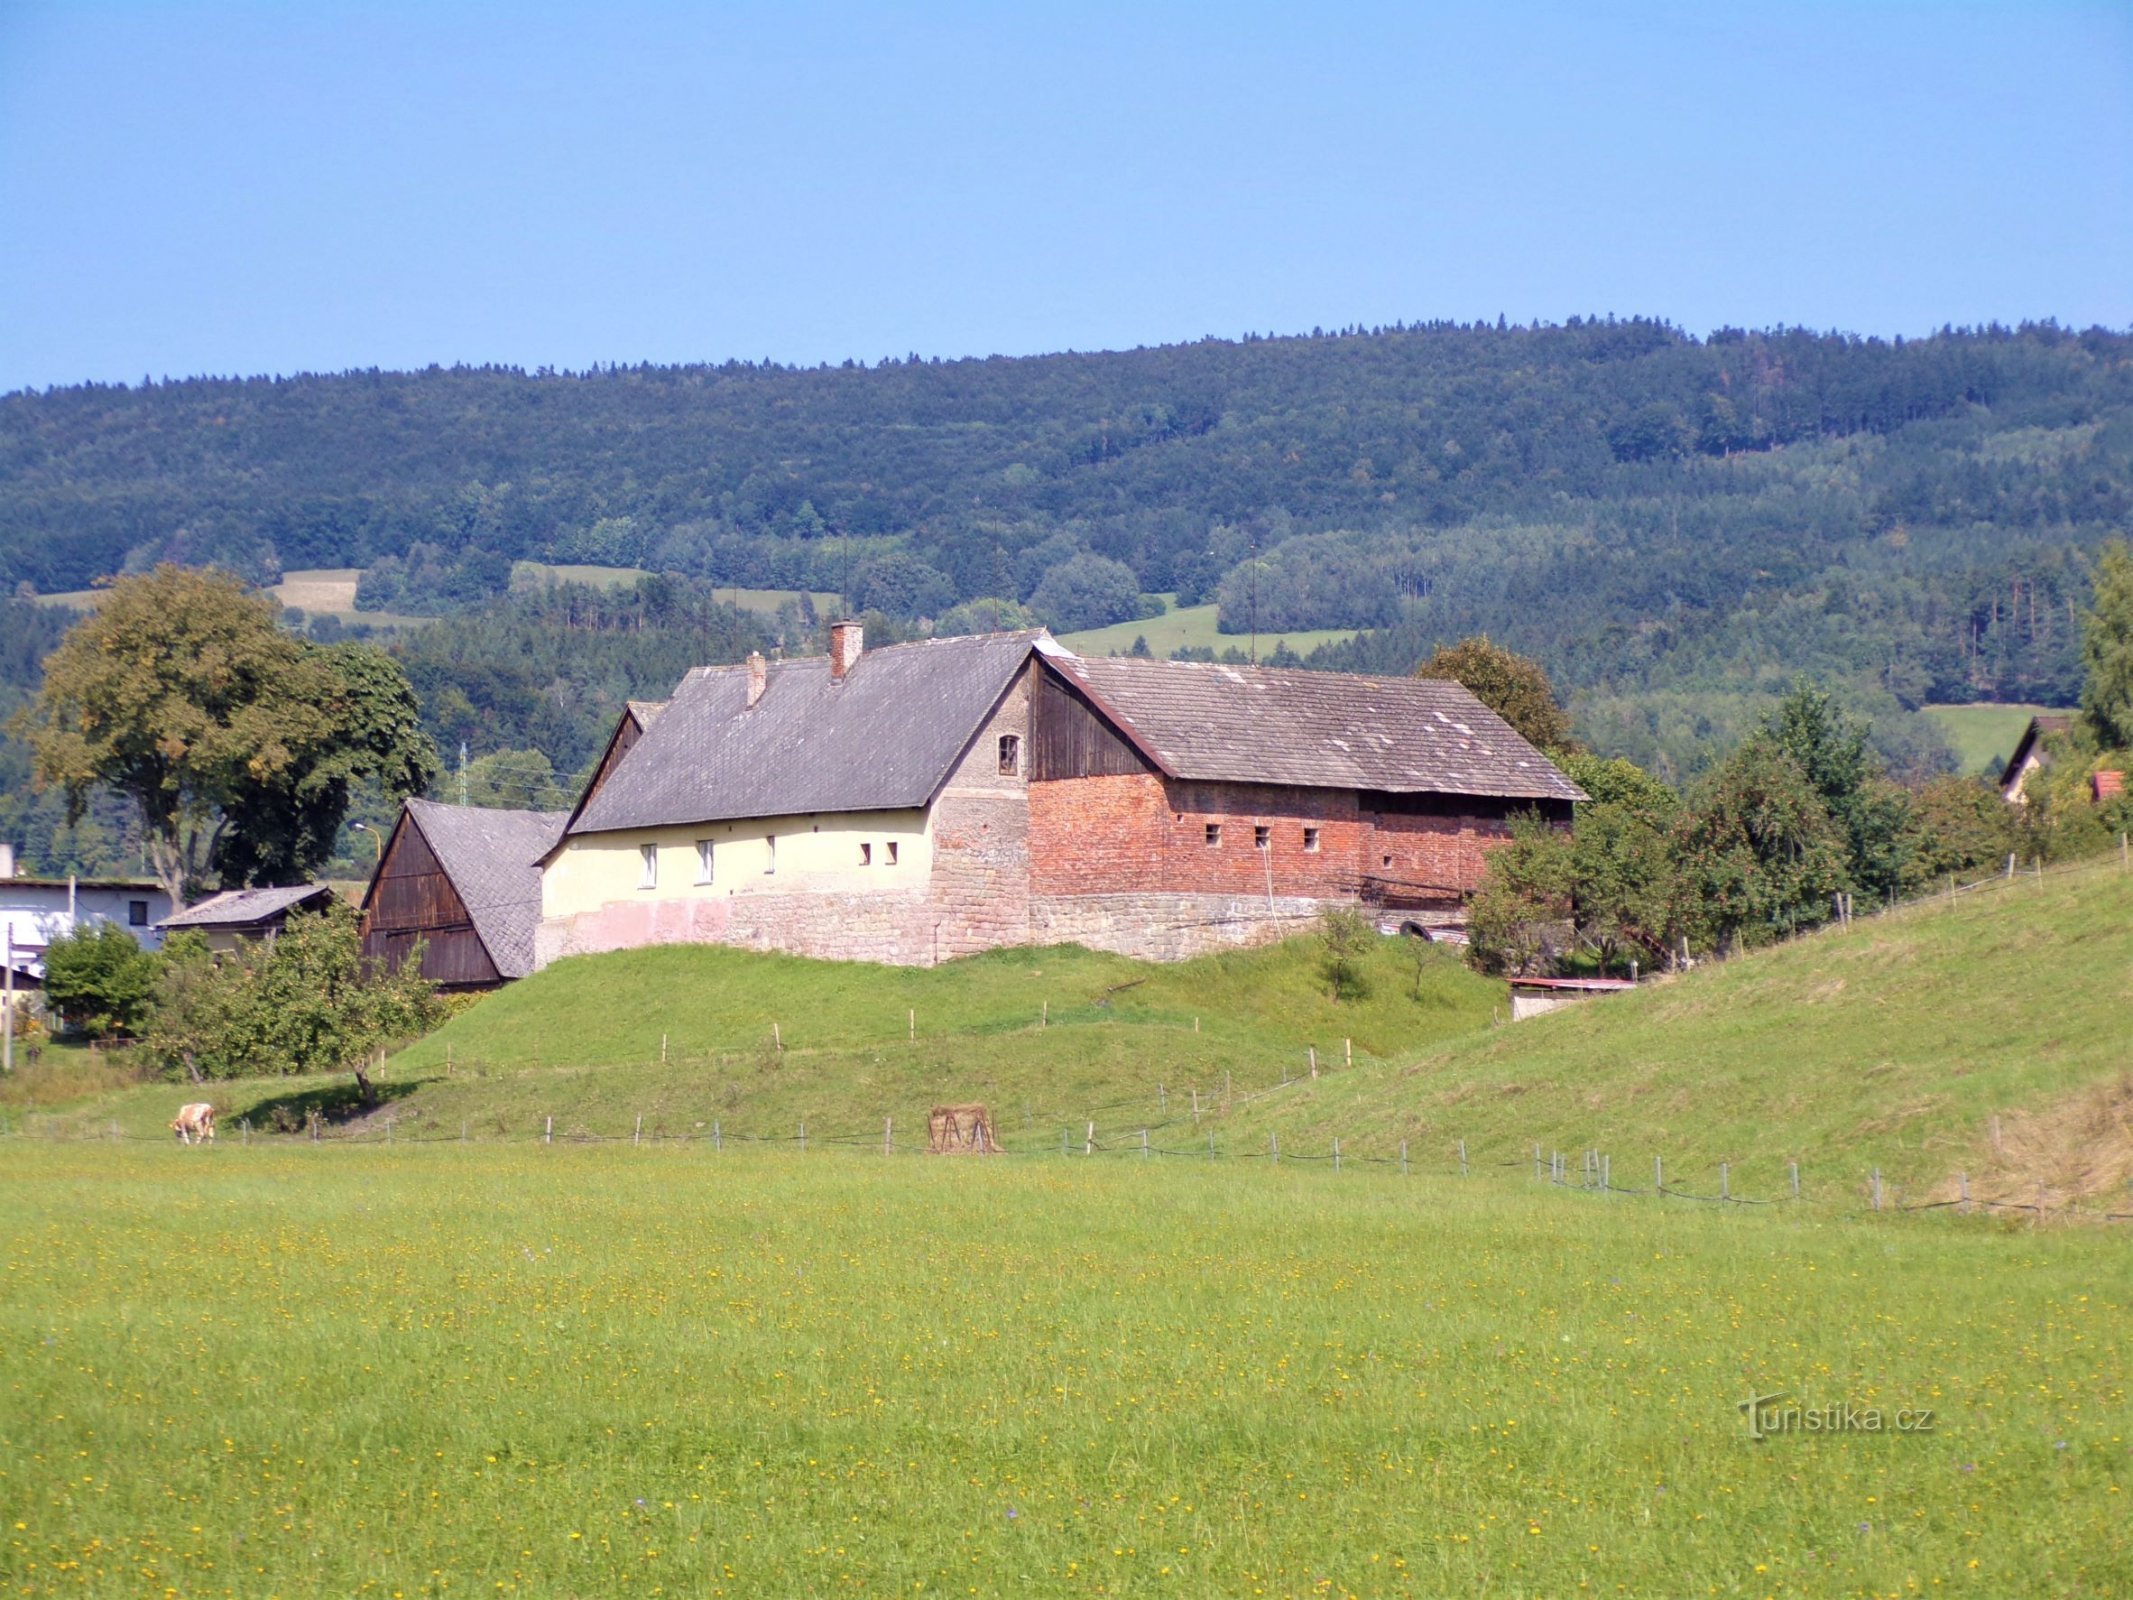 Κτήμα Νο. 242 στη θέση ενός πρώην φρουρίου (Velké Svatoňovice, 6.9.2021/XNUMX/XNUMX)